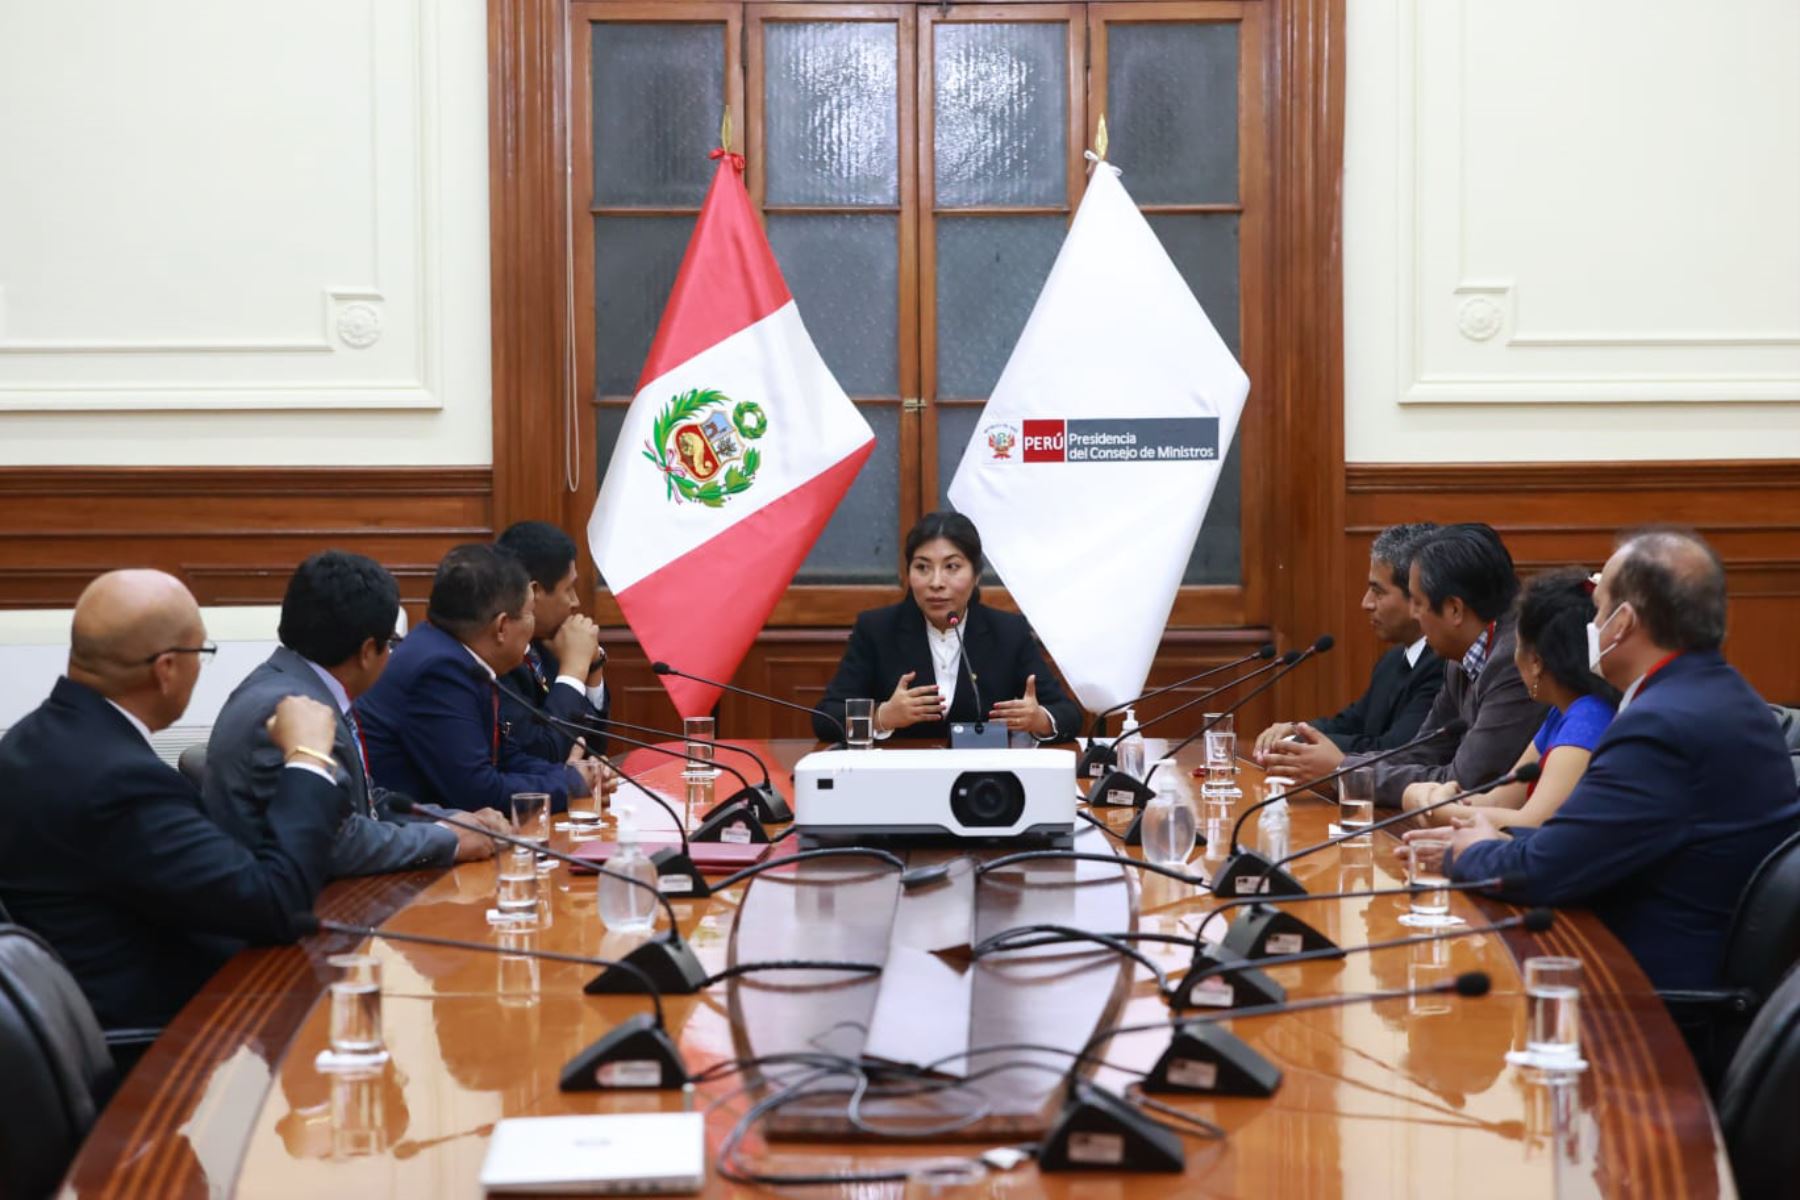 La titular de la PCM, Betssy Chávez, recibió está noche a representantes del Colegio de Abogados del Perú, quienes destacaron su designación e saludo de representantes. Foto: ANDINA/Difusión